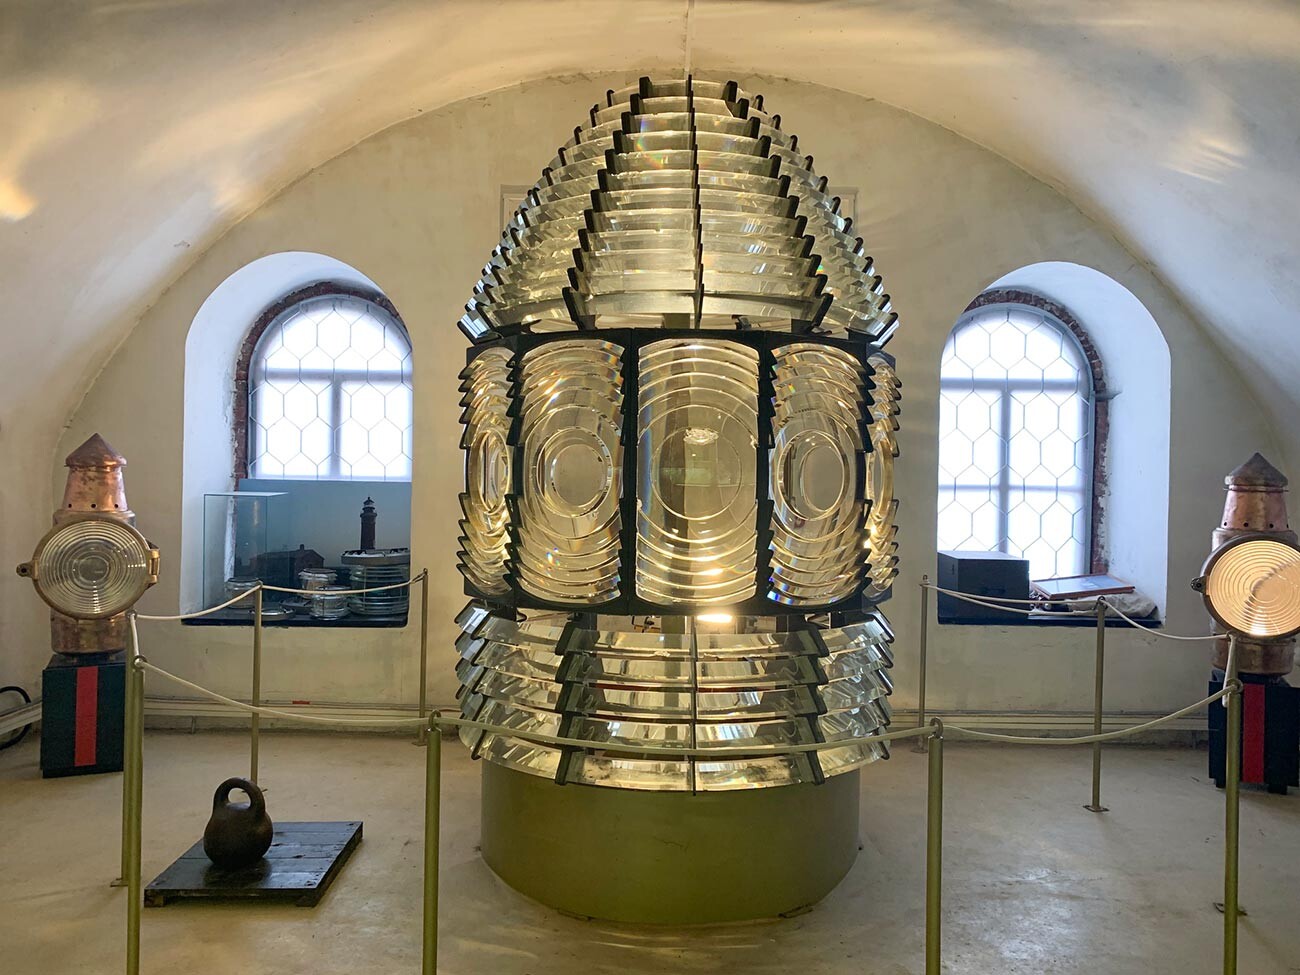 La lente da faro più antica della Russia esposta nel Museo dei fari
